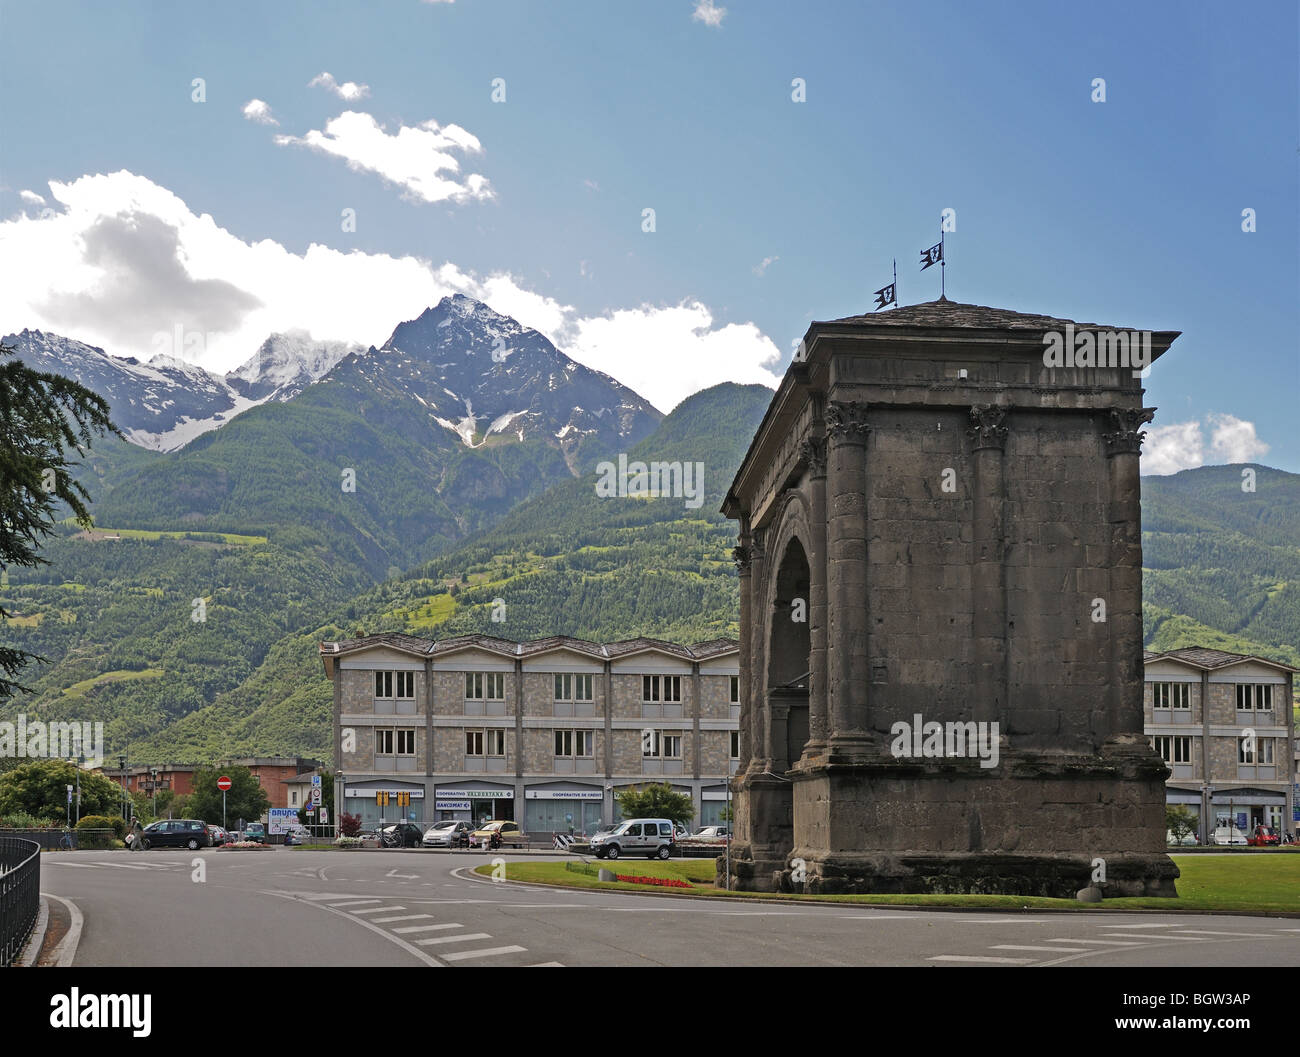 Arc d'Auguste archway romain à l'Est de l'entrée de Aosta Italie avec des sommets alpins à distance Banque D'Images